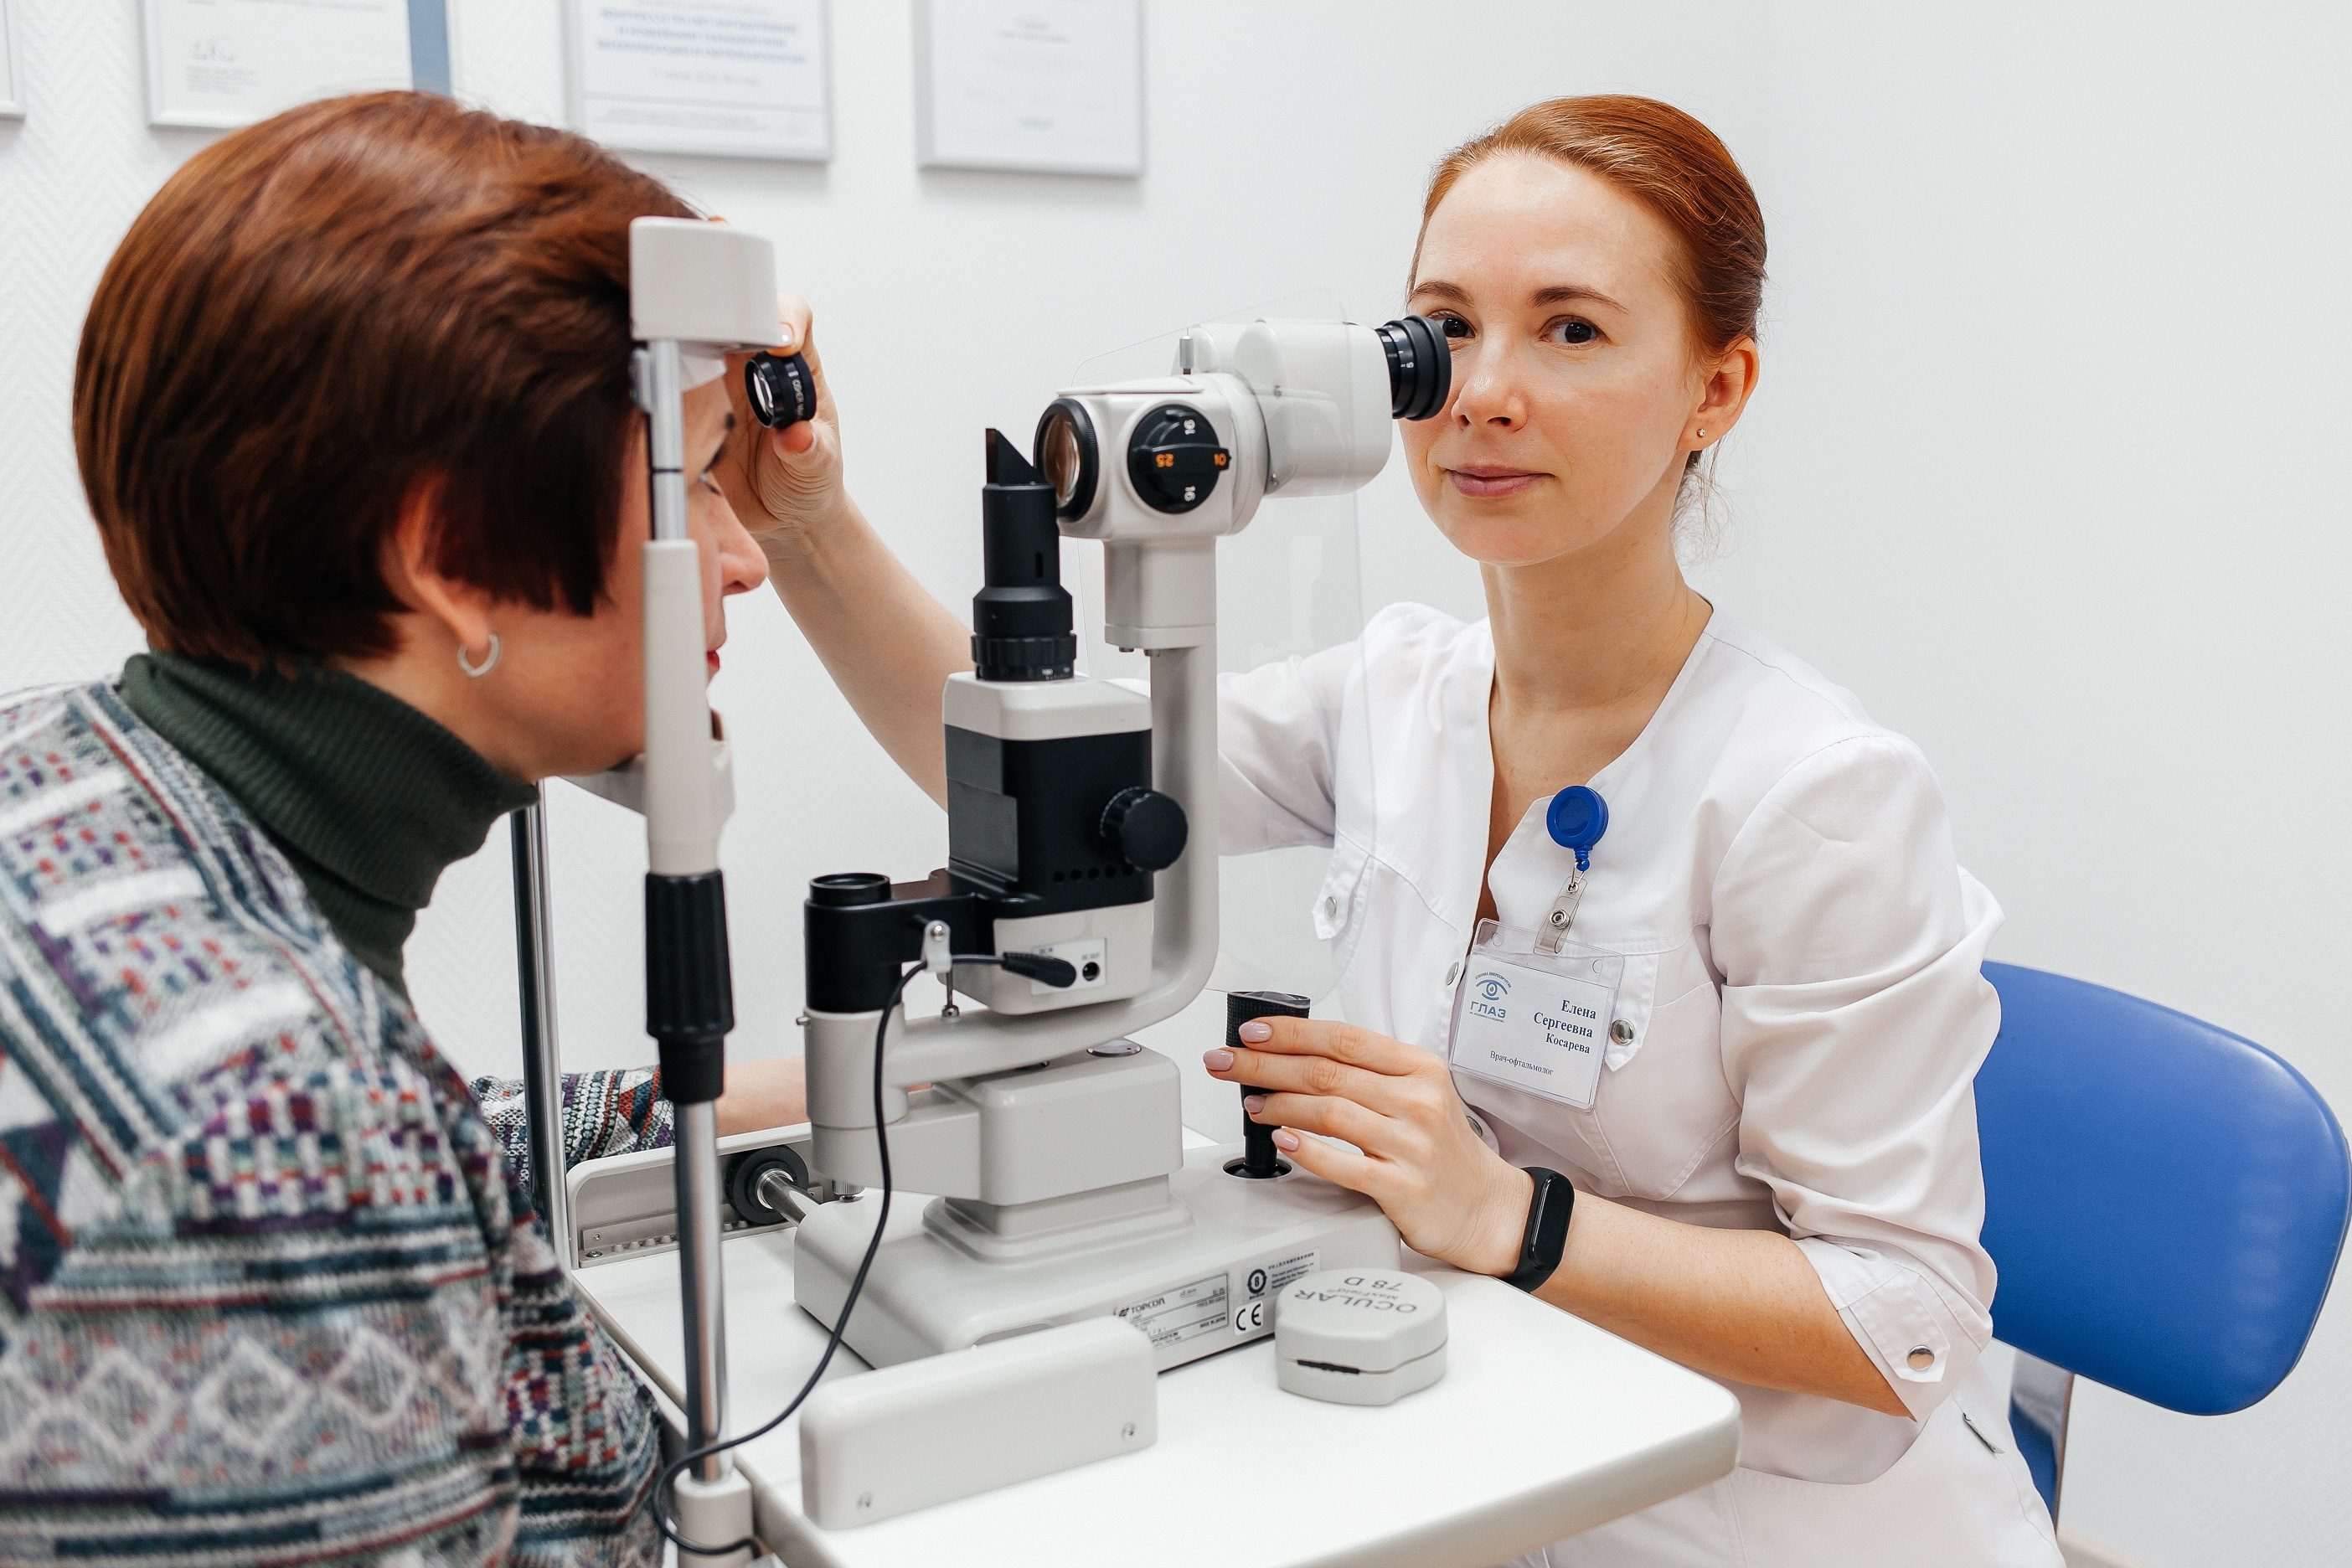 Офтальмолог Елена Сергеевна Косарева о значении офтальмологической диагностики: раннее выявление катаракты упрощает процесс лечения и позволяет избежать осложнений в будущем